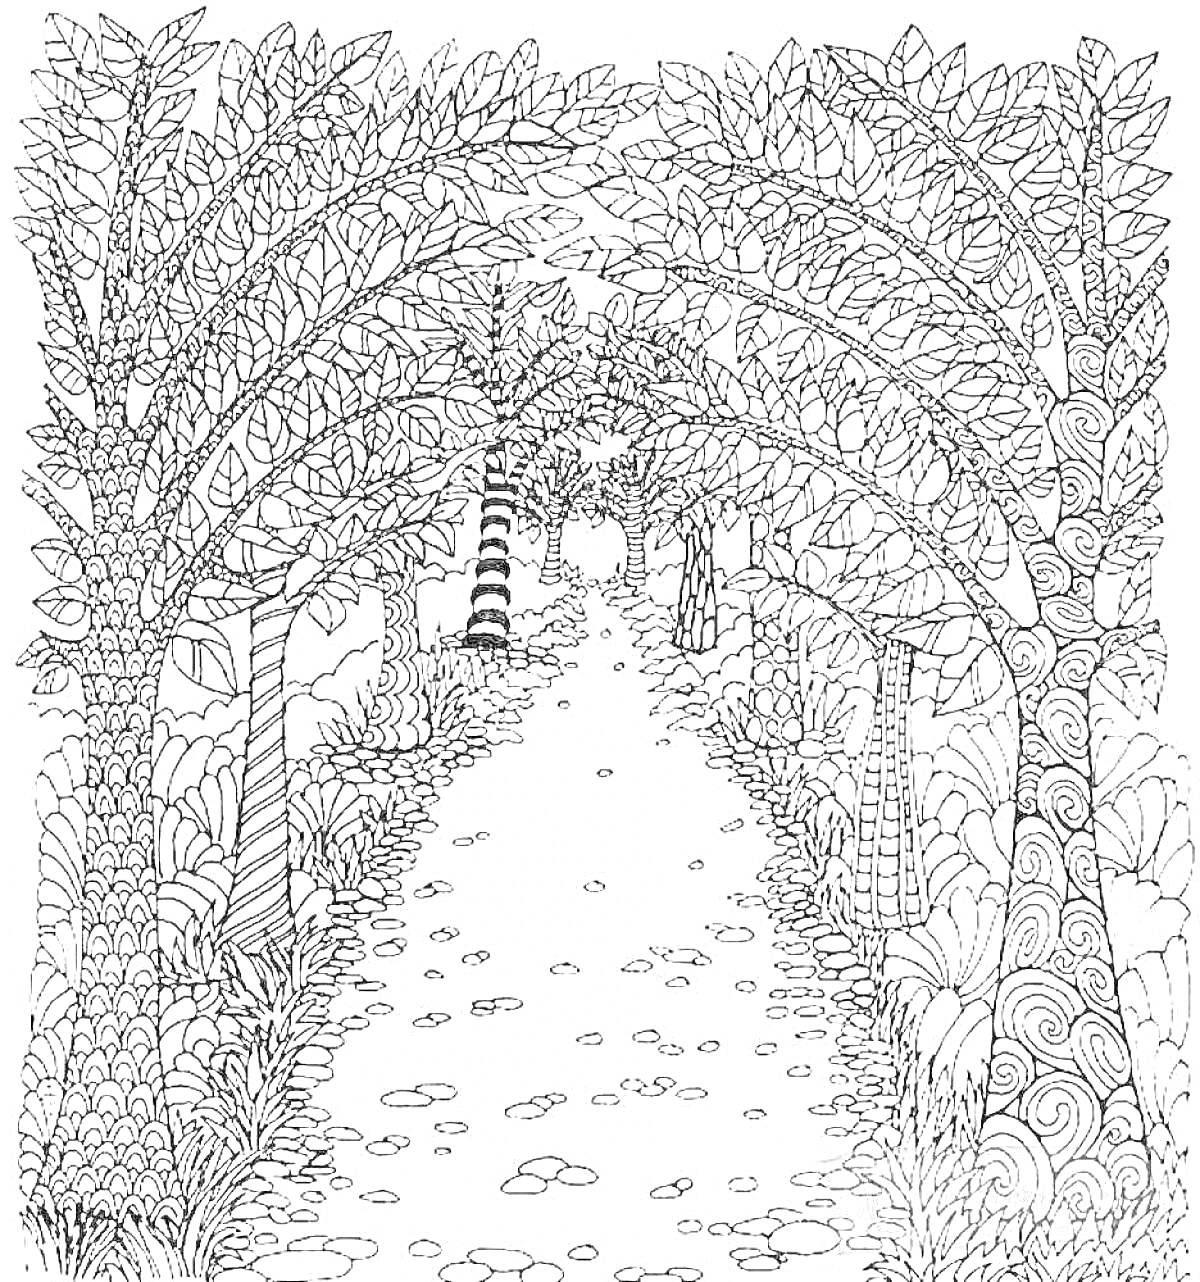 Раскраска В лесу с деревьями, с витиевато нарисованными стволами и листьями, каменная дорога